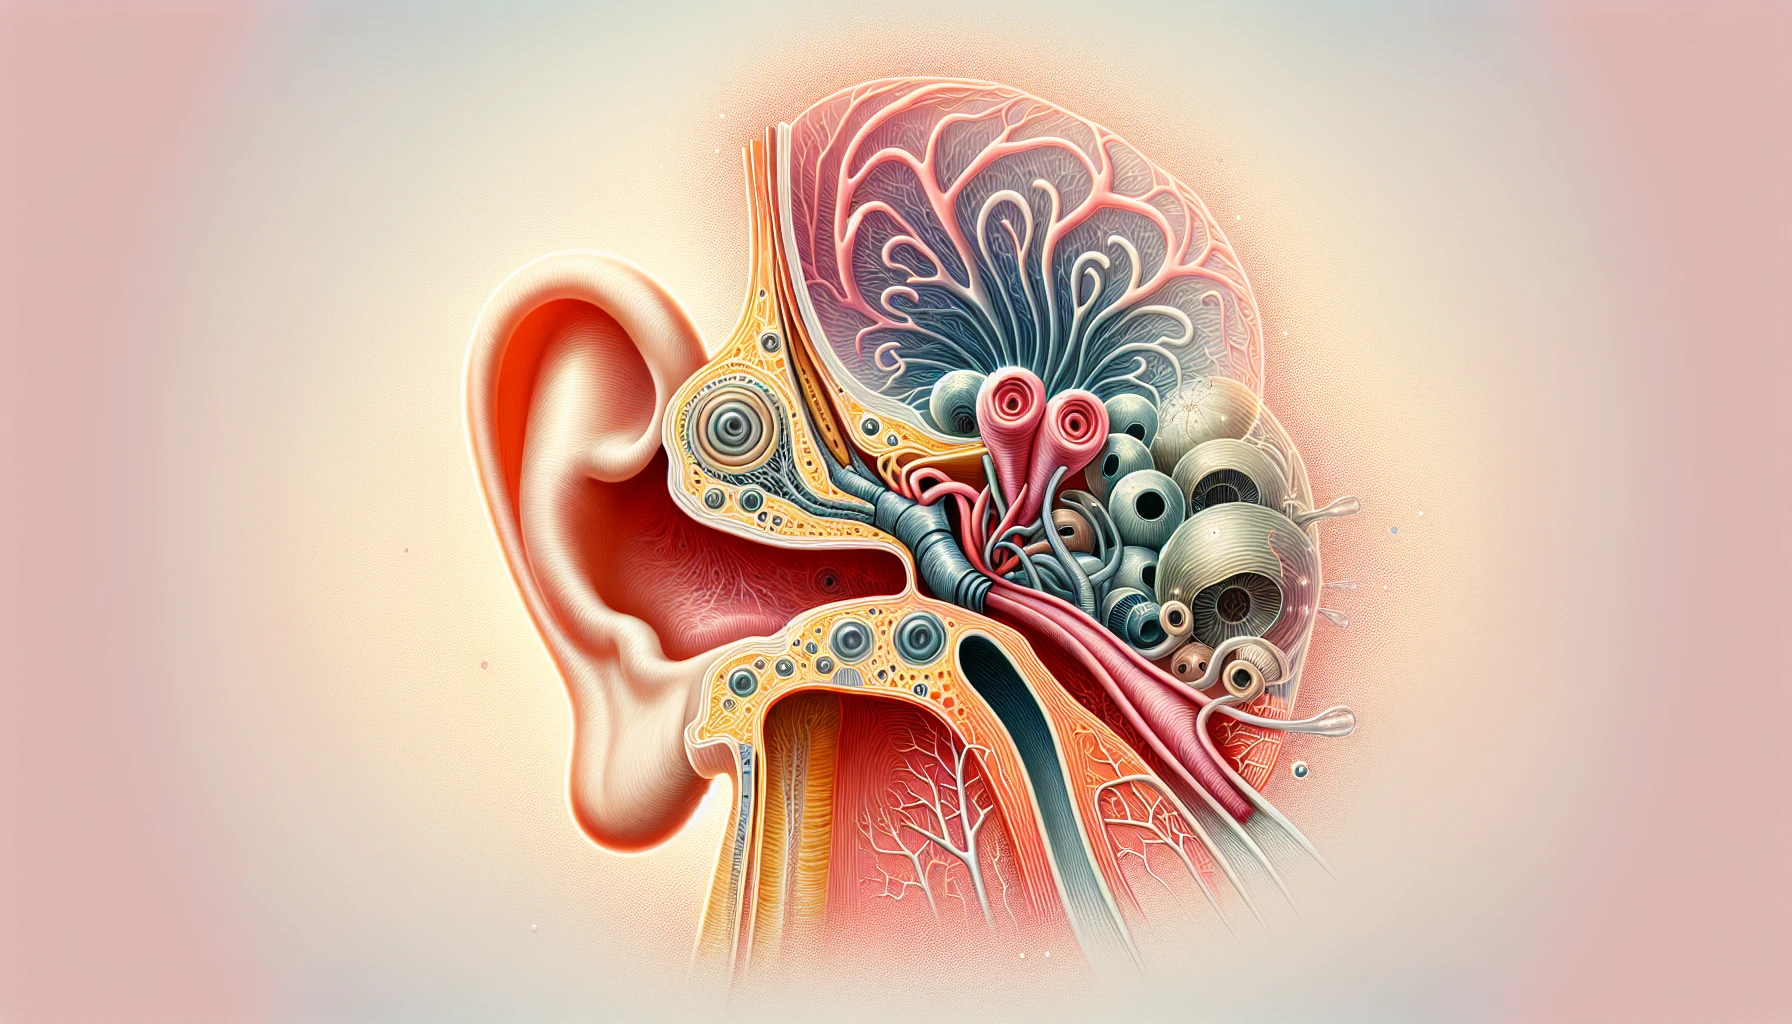 Illustration of Eustachian tube and inner ear anatomy